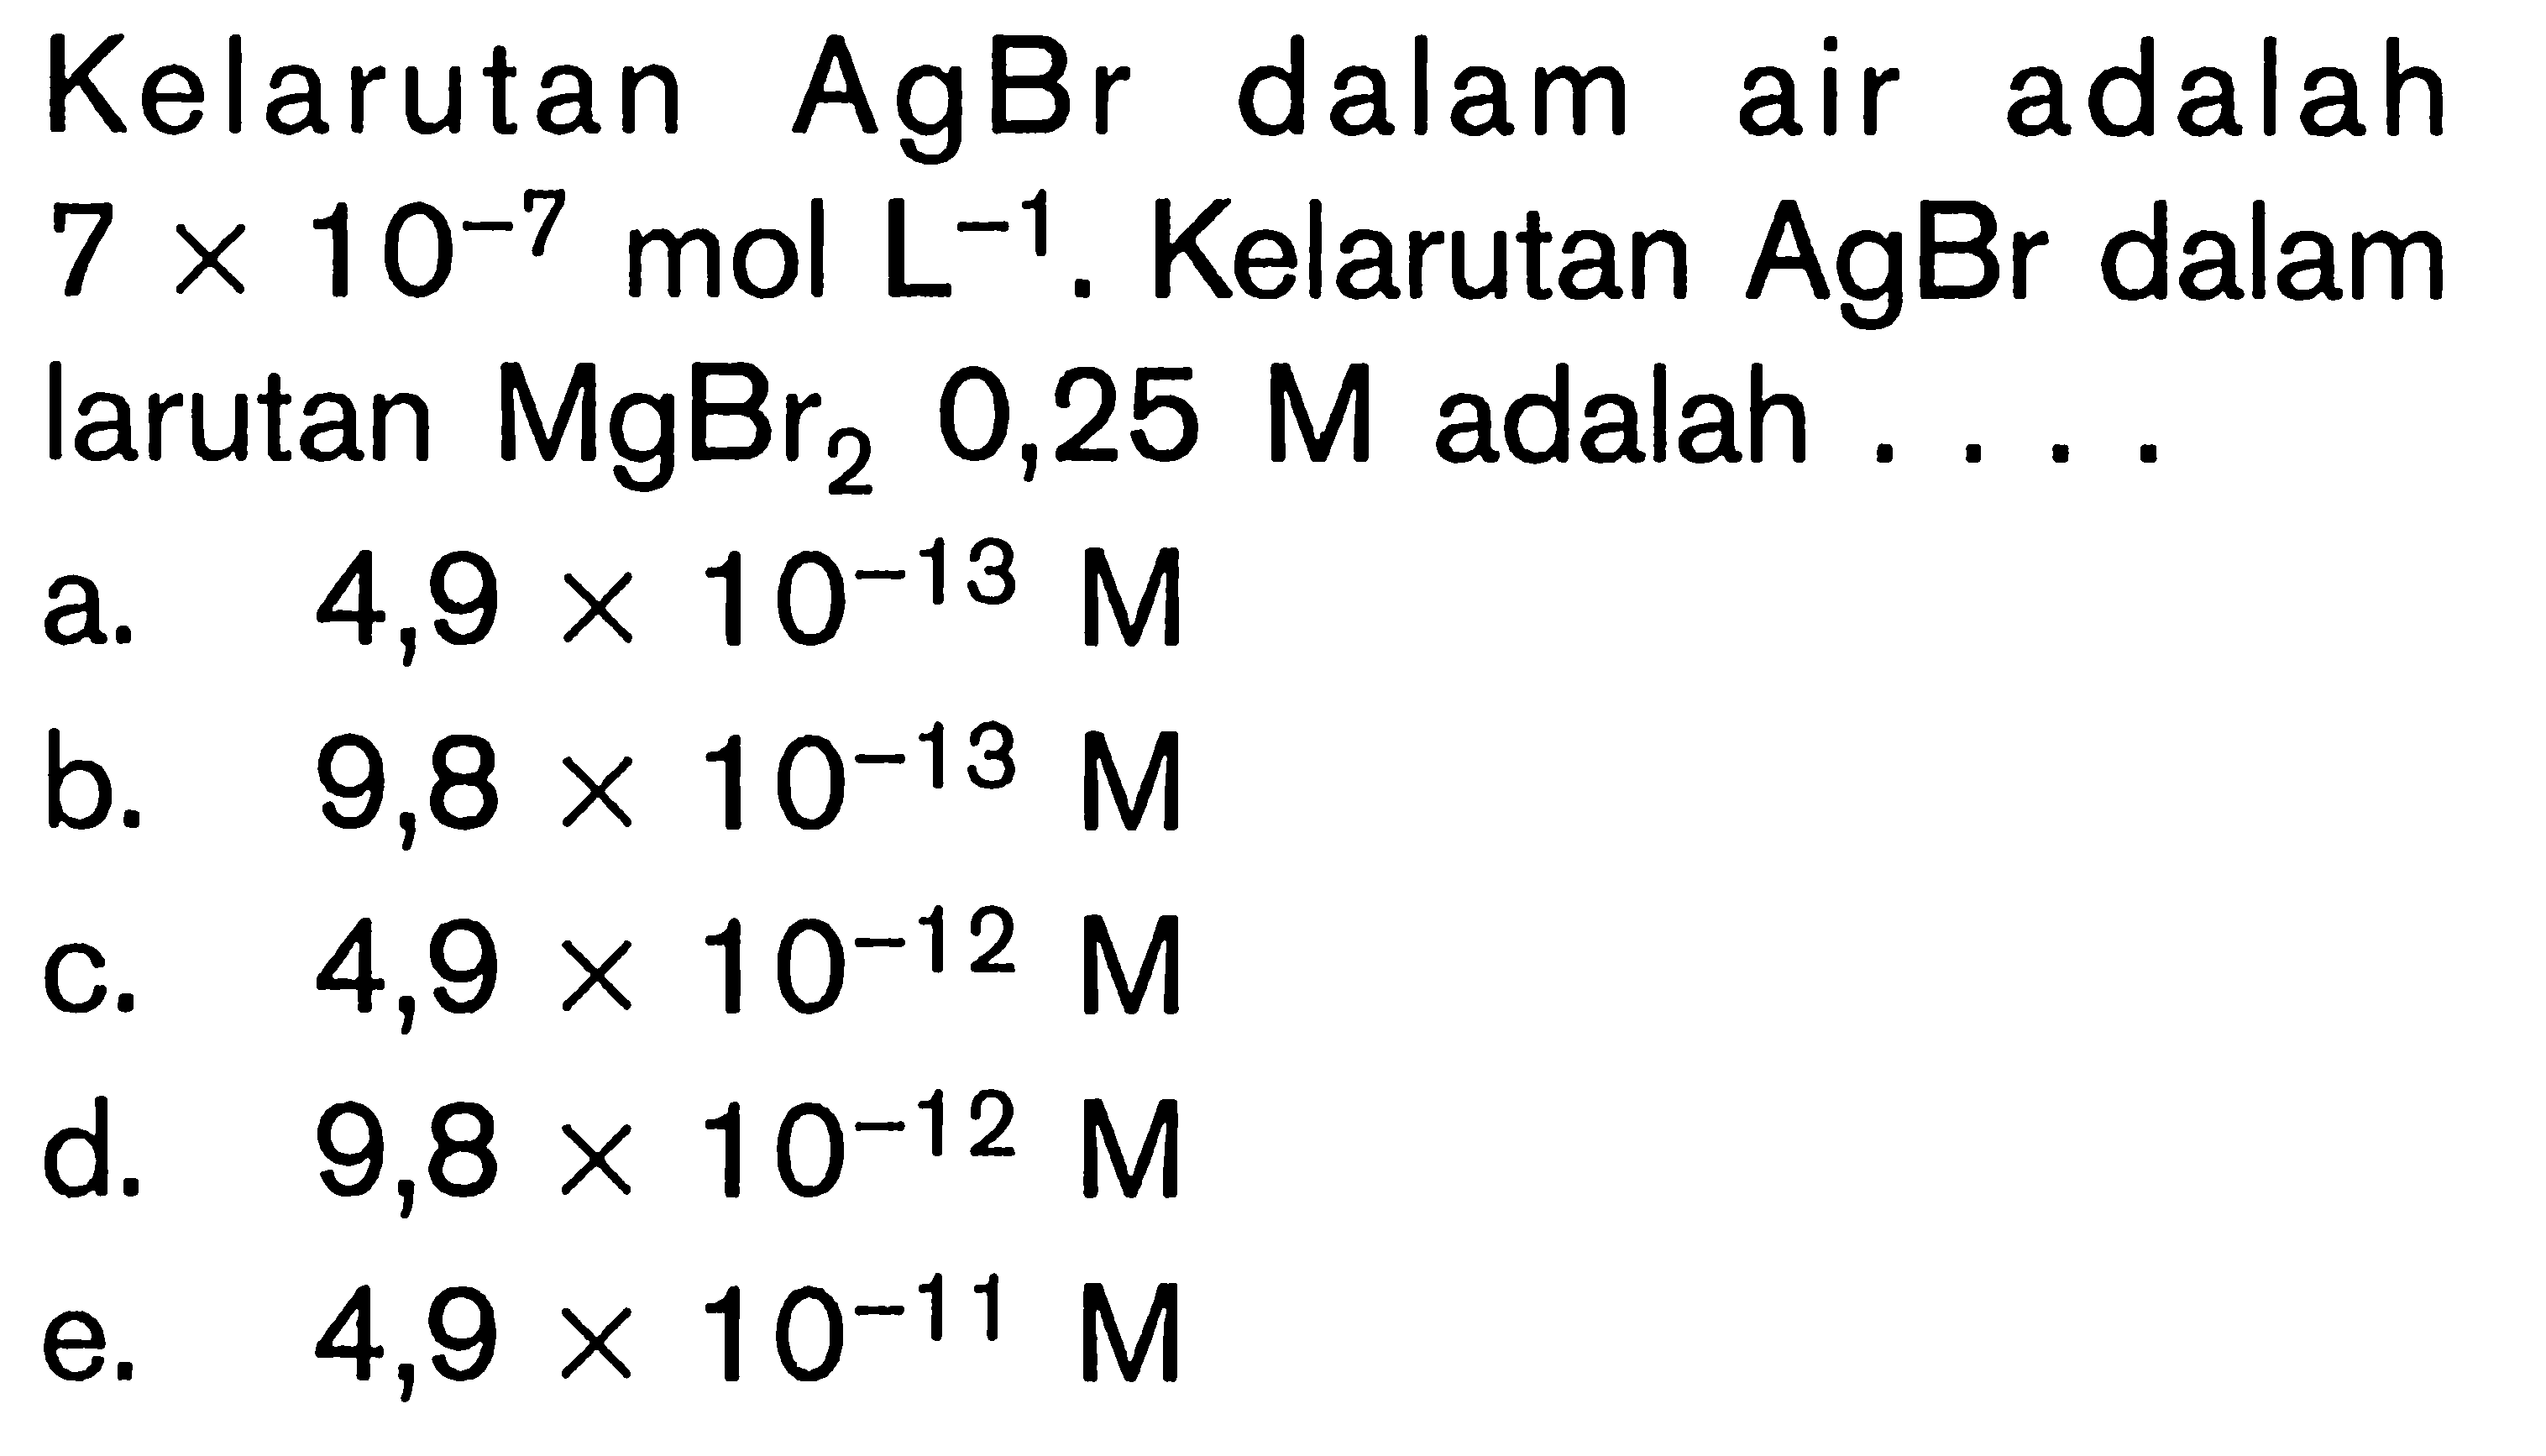 Kelarutan AgBr dalam air adalah 7 x 10^(-7) mol L^(-1). Kelarutan AgBr dalam larutan  MgBr2 0,25 M adalah ....